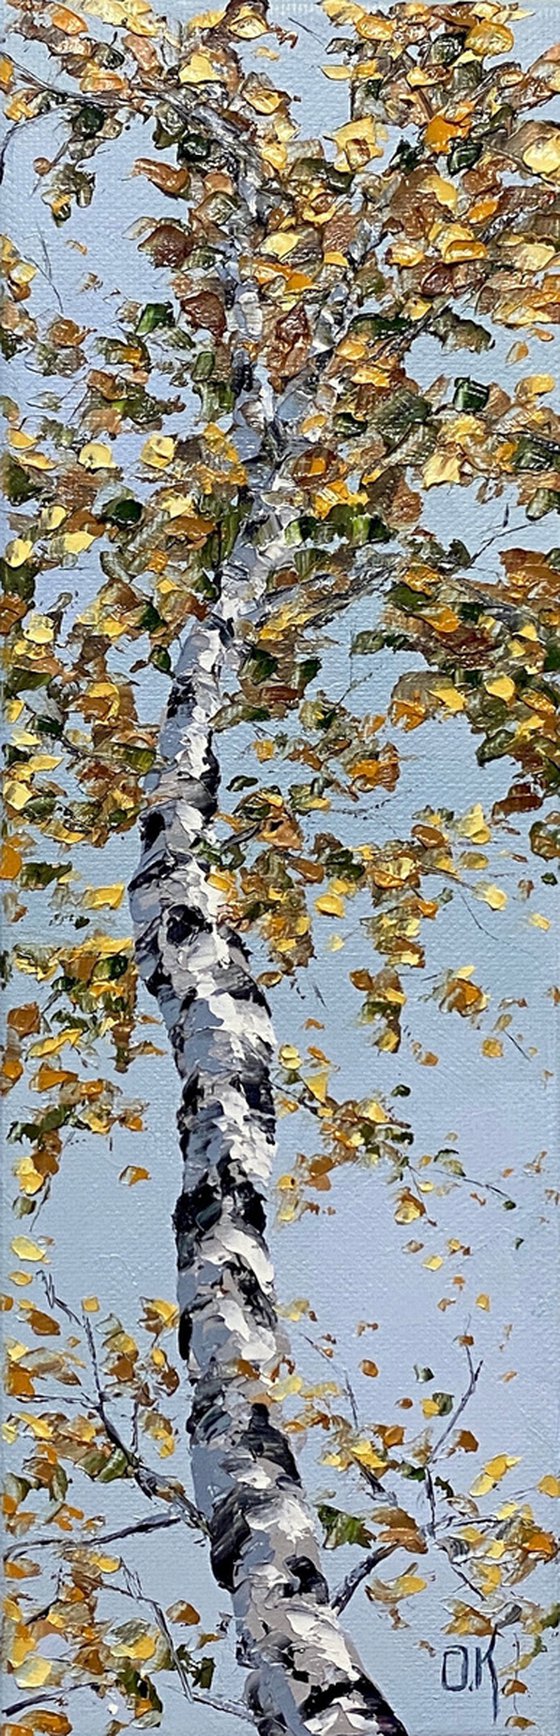 Birch in the sky